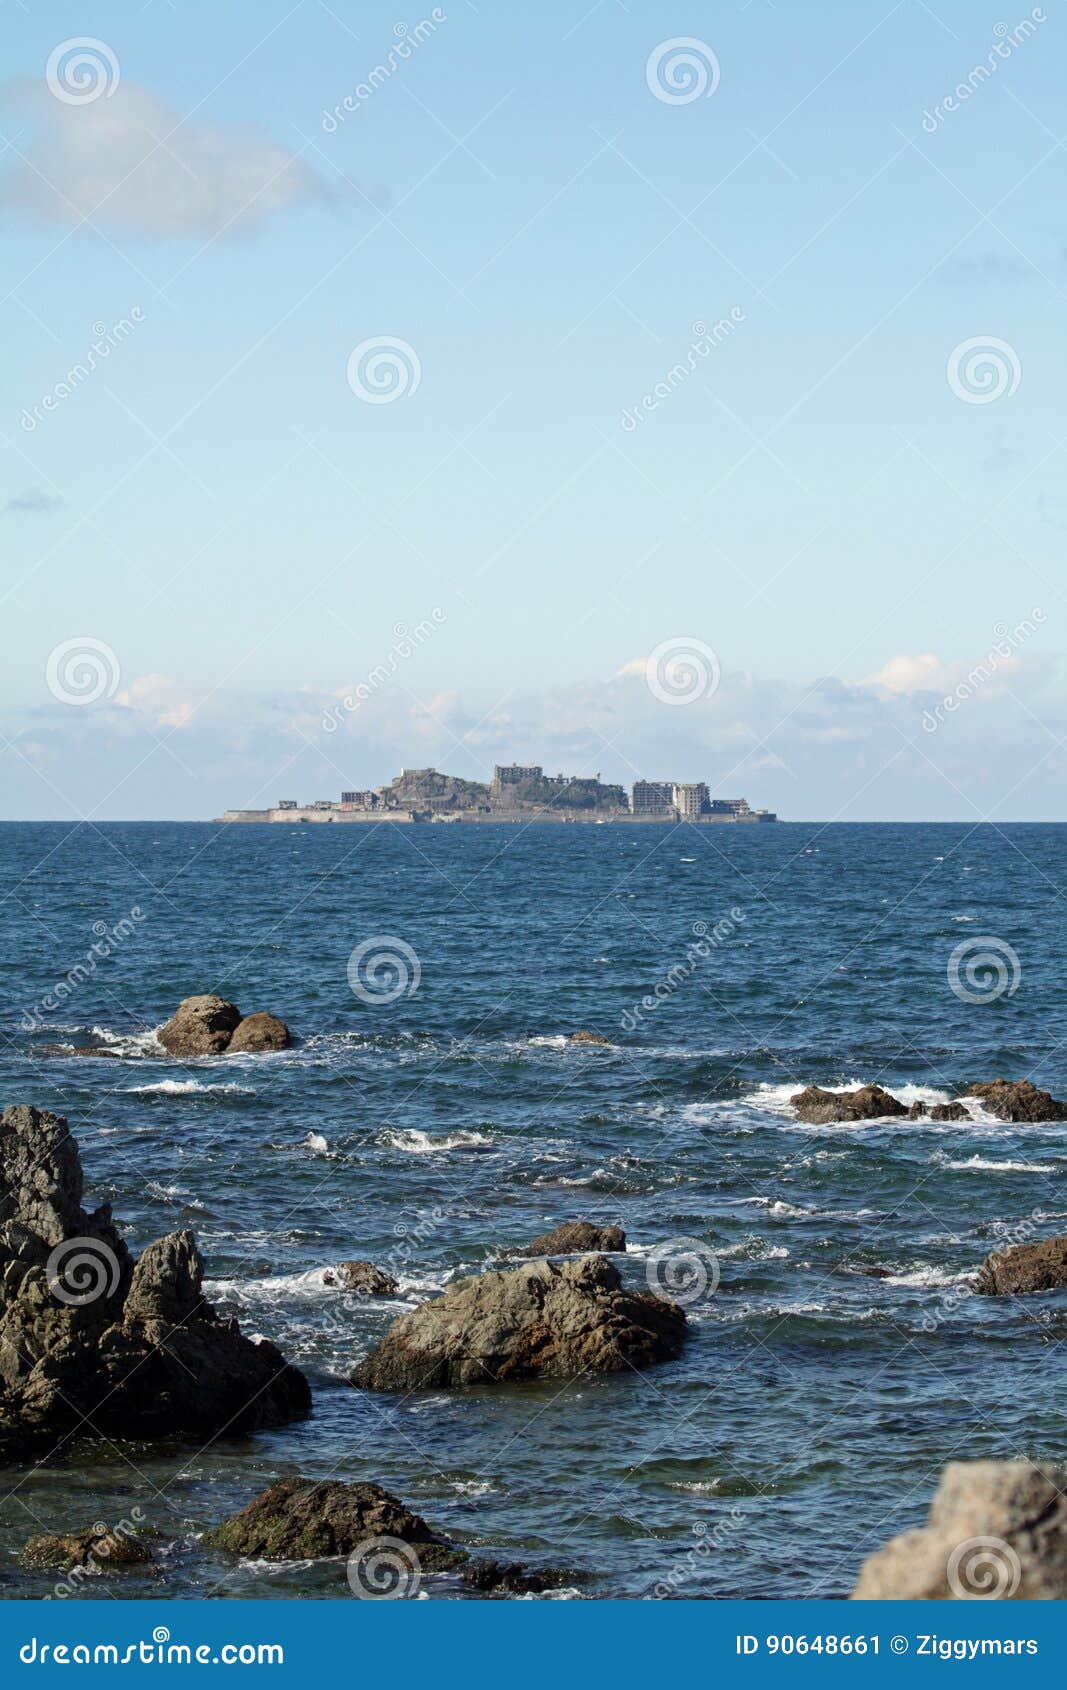 gunkan jima battleship island in nagasaki